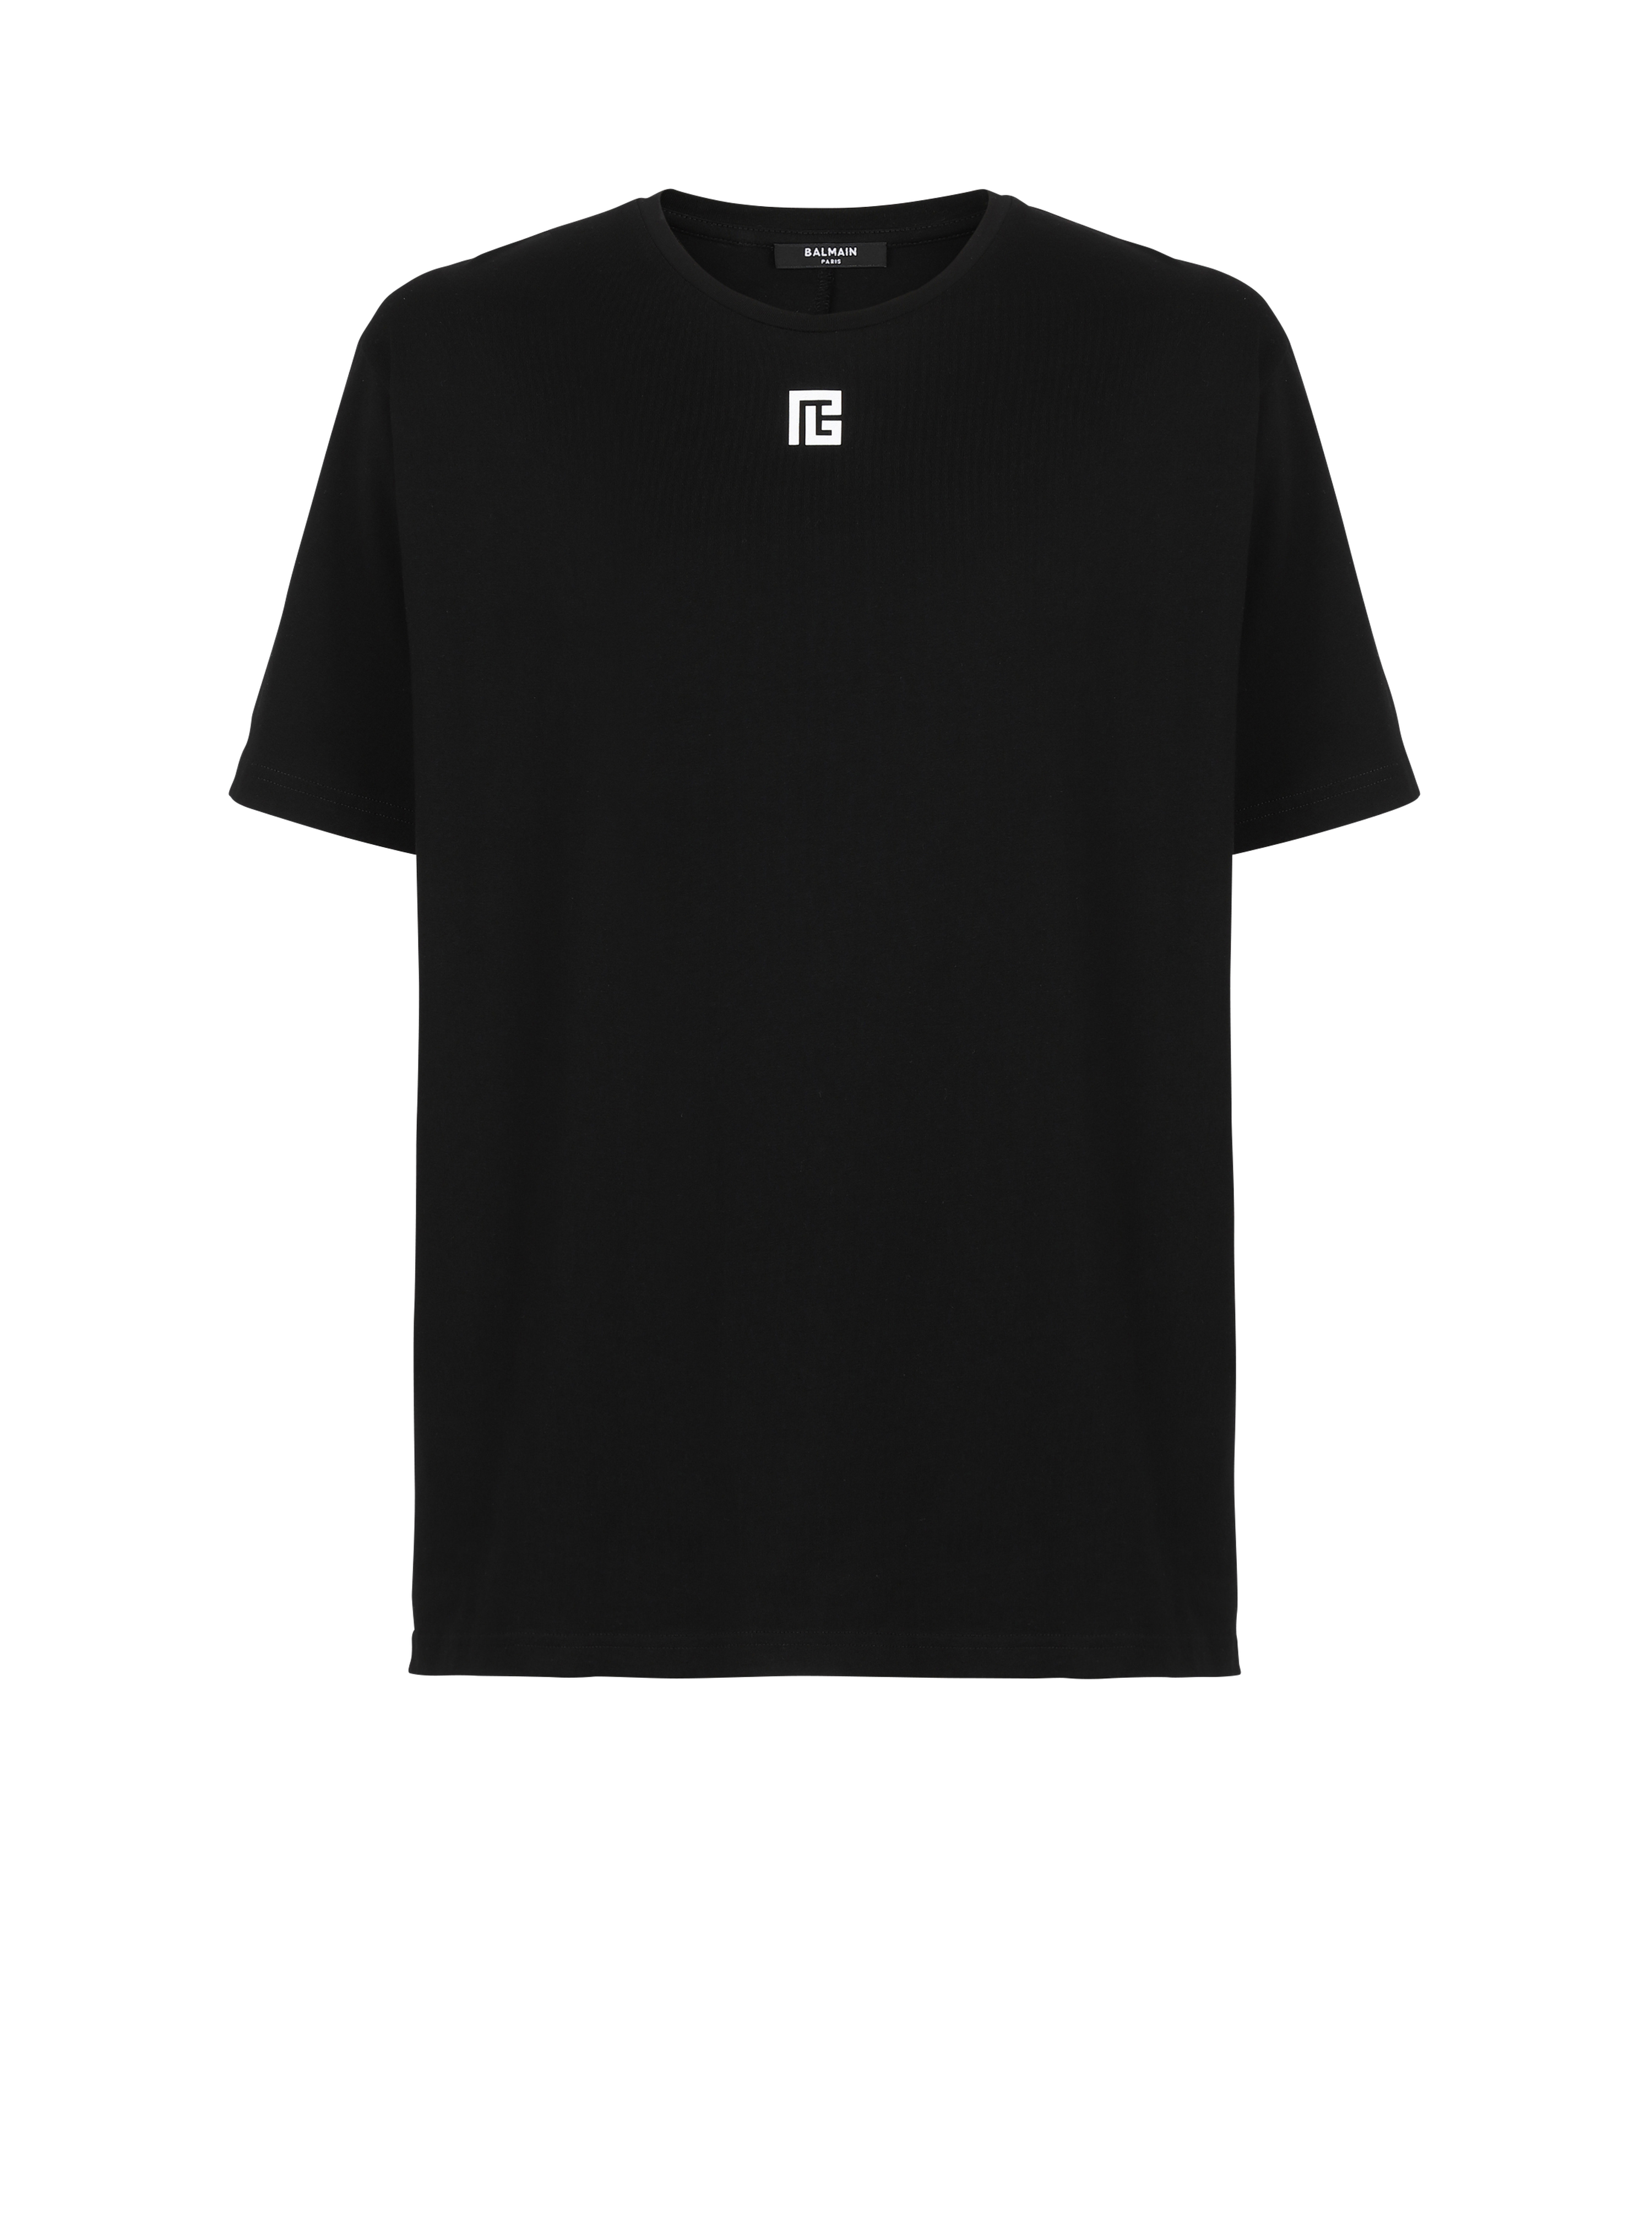 맥시 Balmain 로고 프린트 디테일 오버사이즈 코튼 티셔츠, 검정색